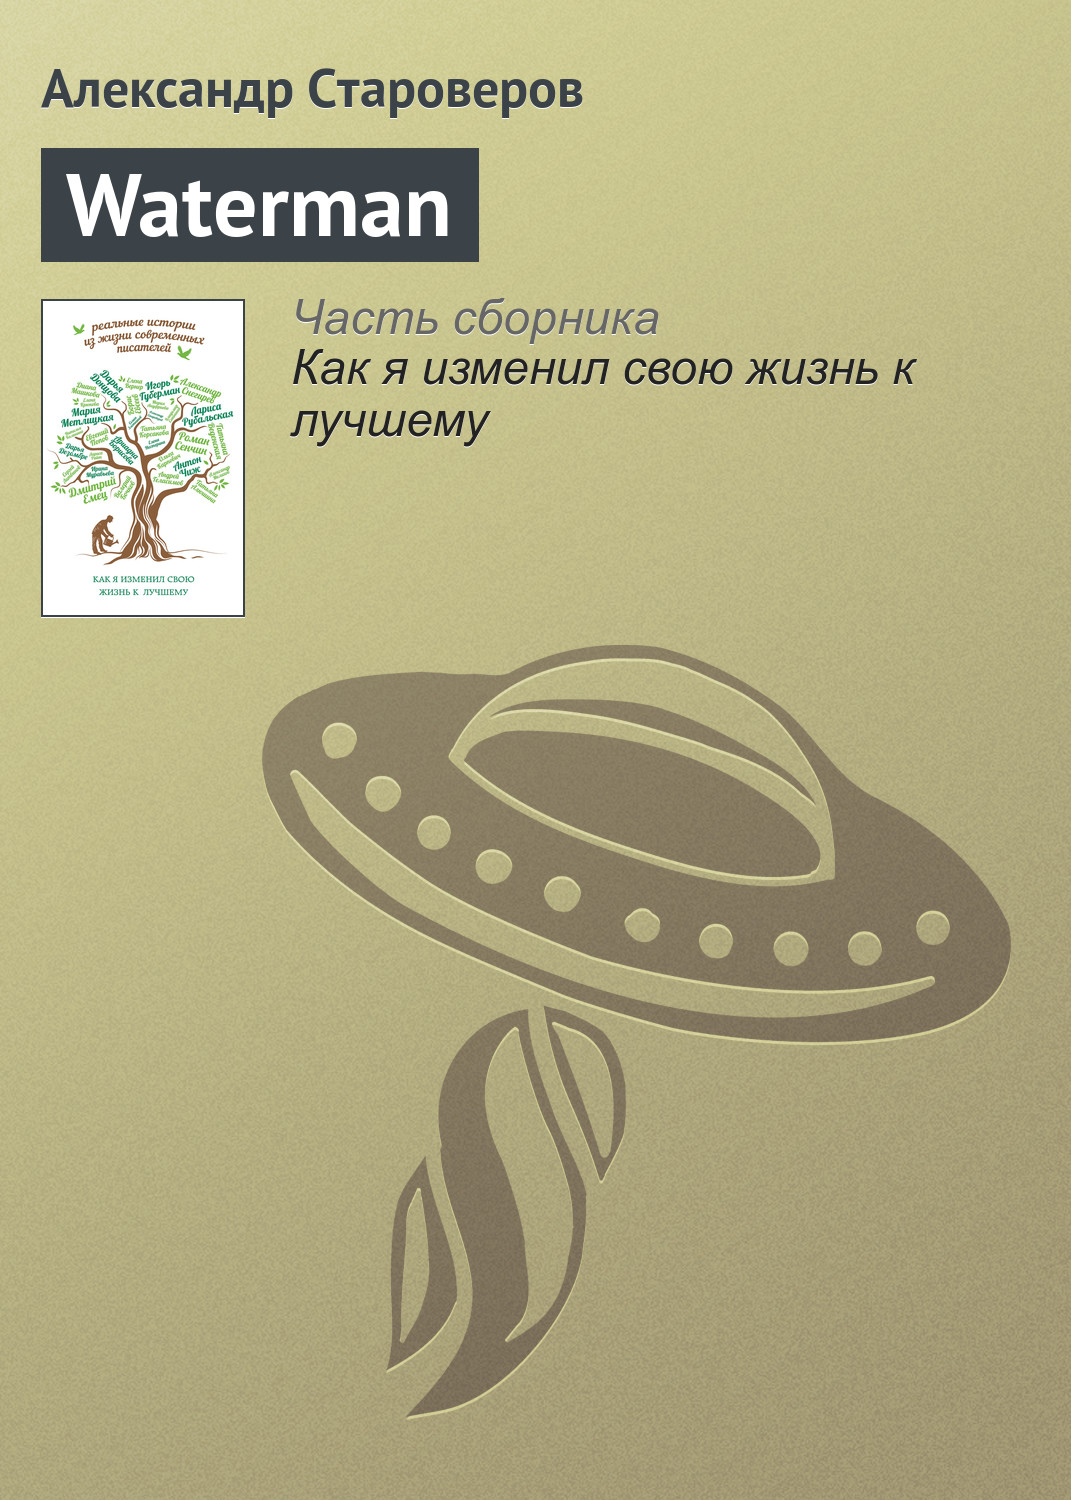 Книга Waterman из серии , созданная Александр Староверов, может относится к жанру Биографии и Мемуары. Стоимость электронной книги Waterman с идентификатором 17097810 составляет 44.95 руб.